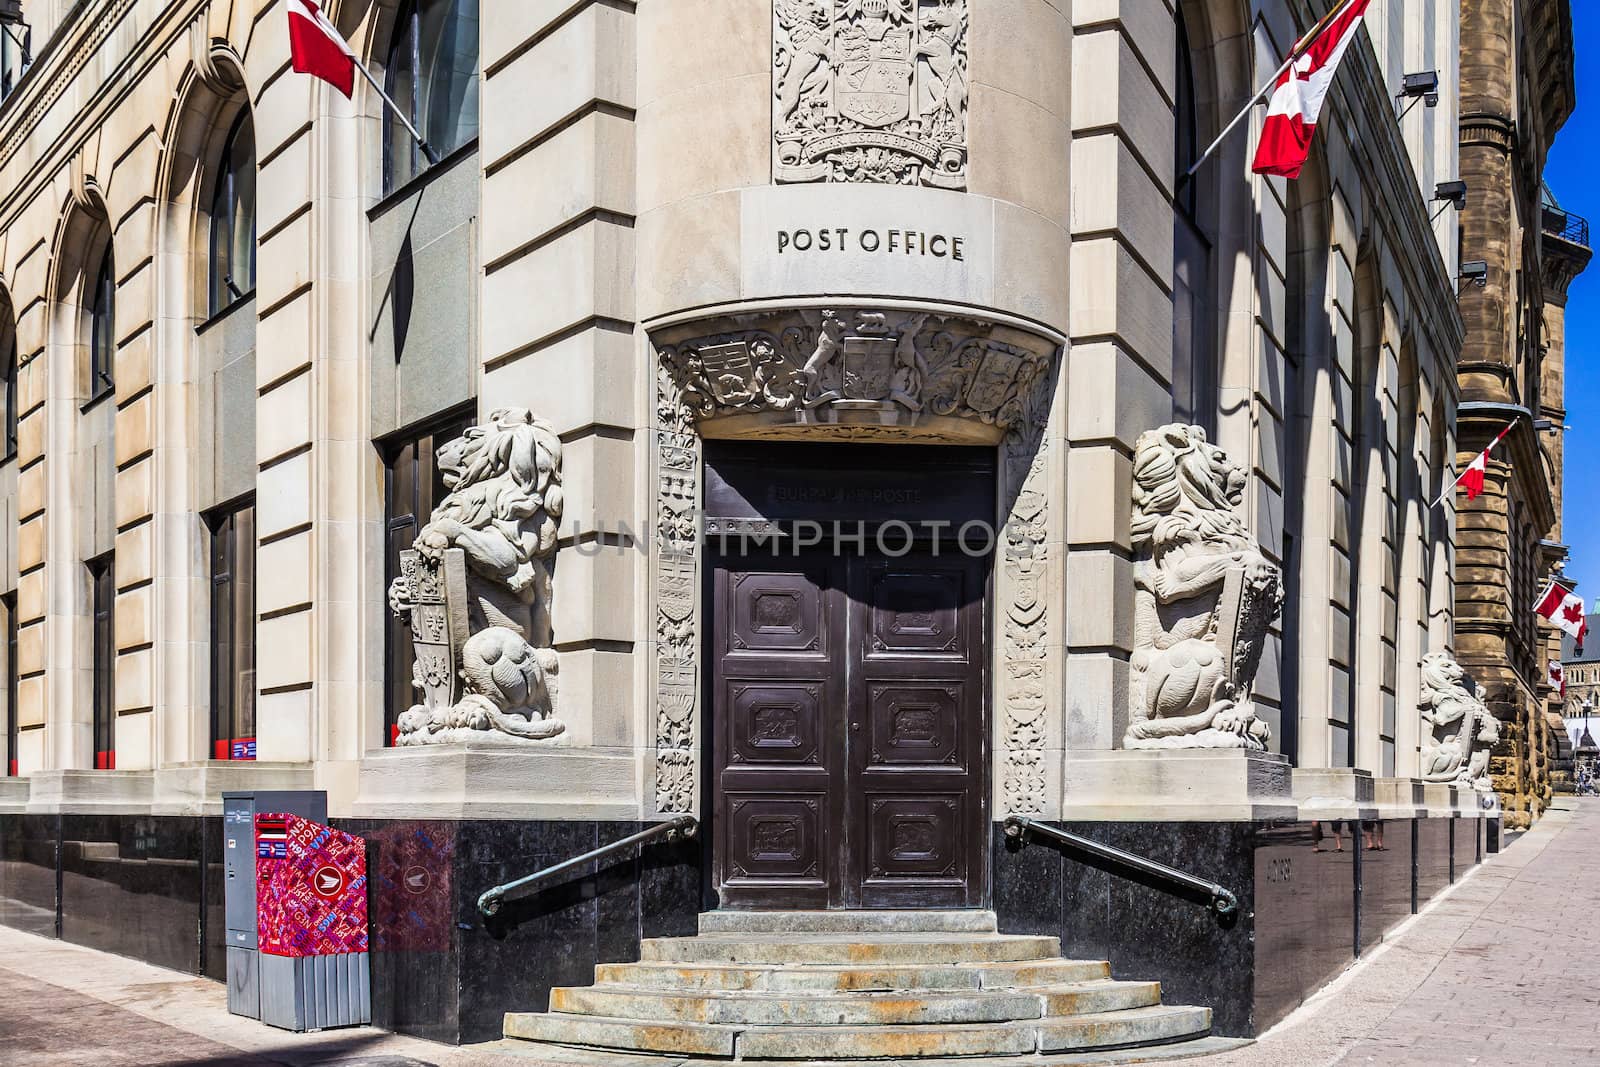 Post Office in Ottawa by petkolophoto